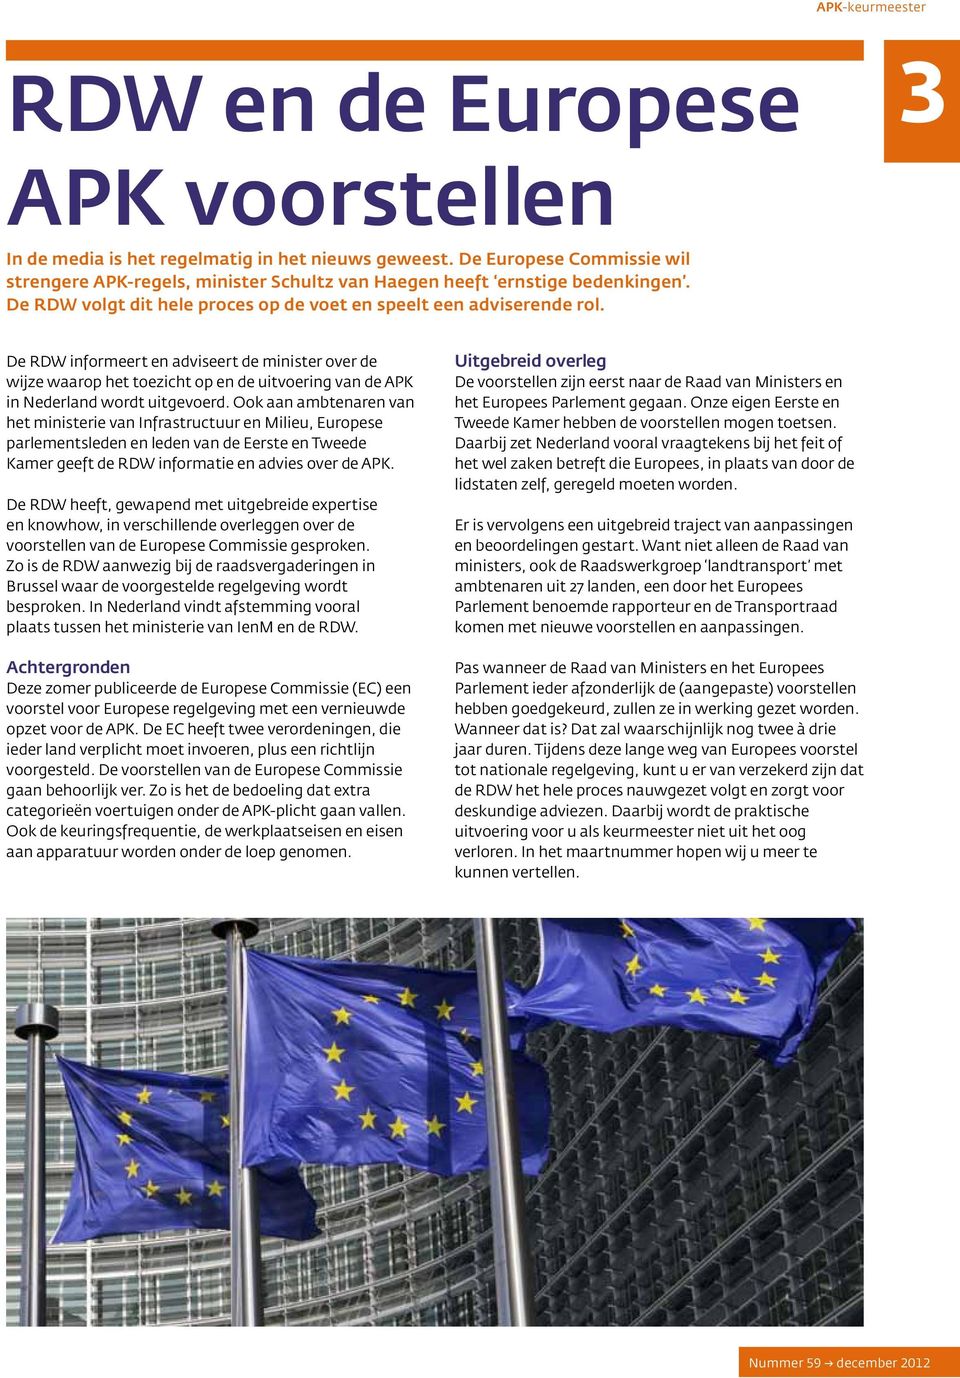 De RDW informeert en adviseert de minister over de wijze waarop het toezicht op en de uitvoering van de APK in Nederland wordt uitgevoerd.